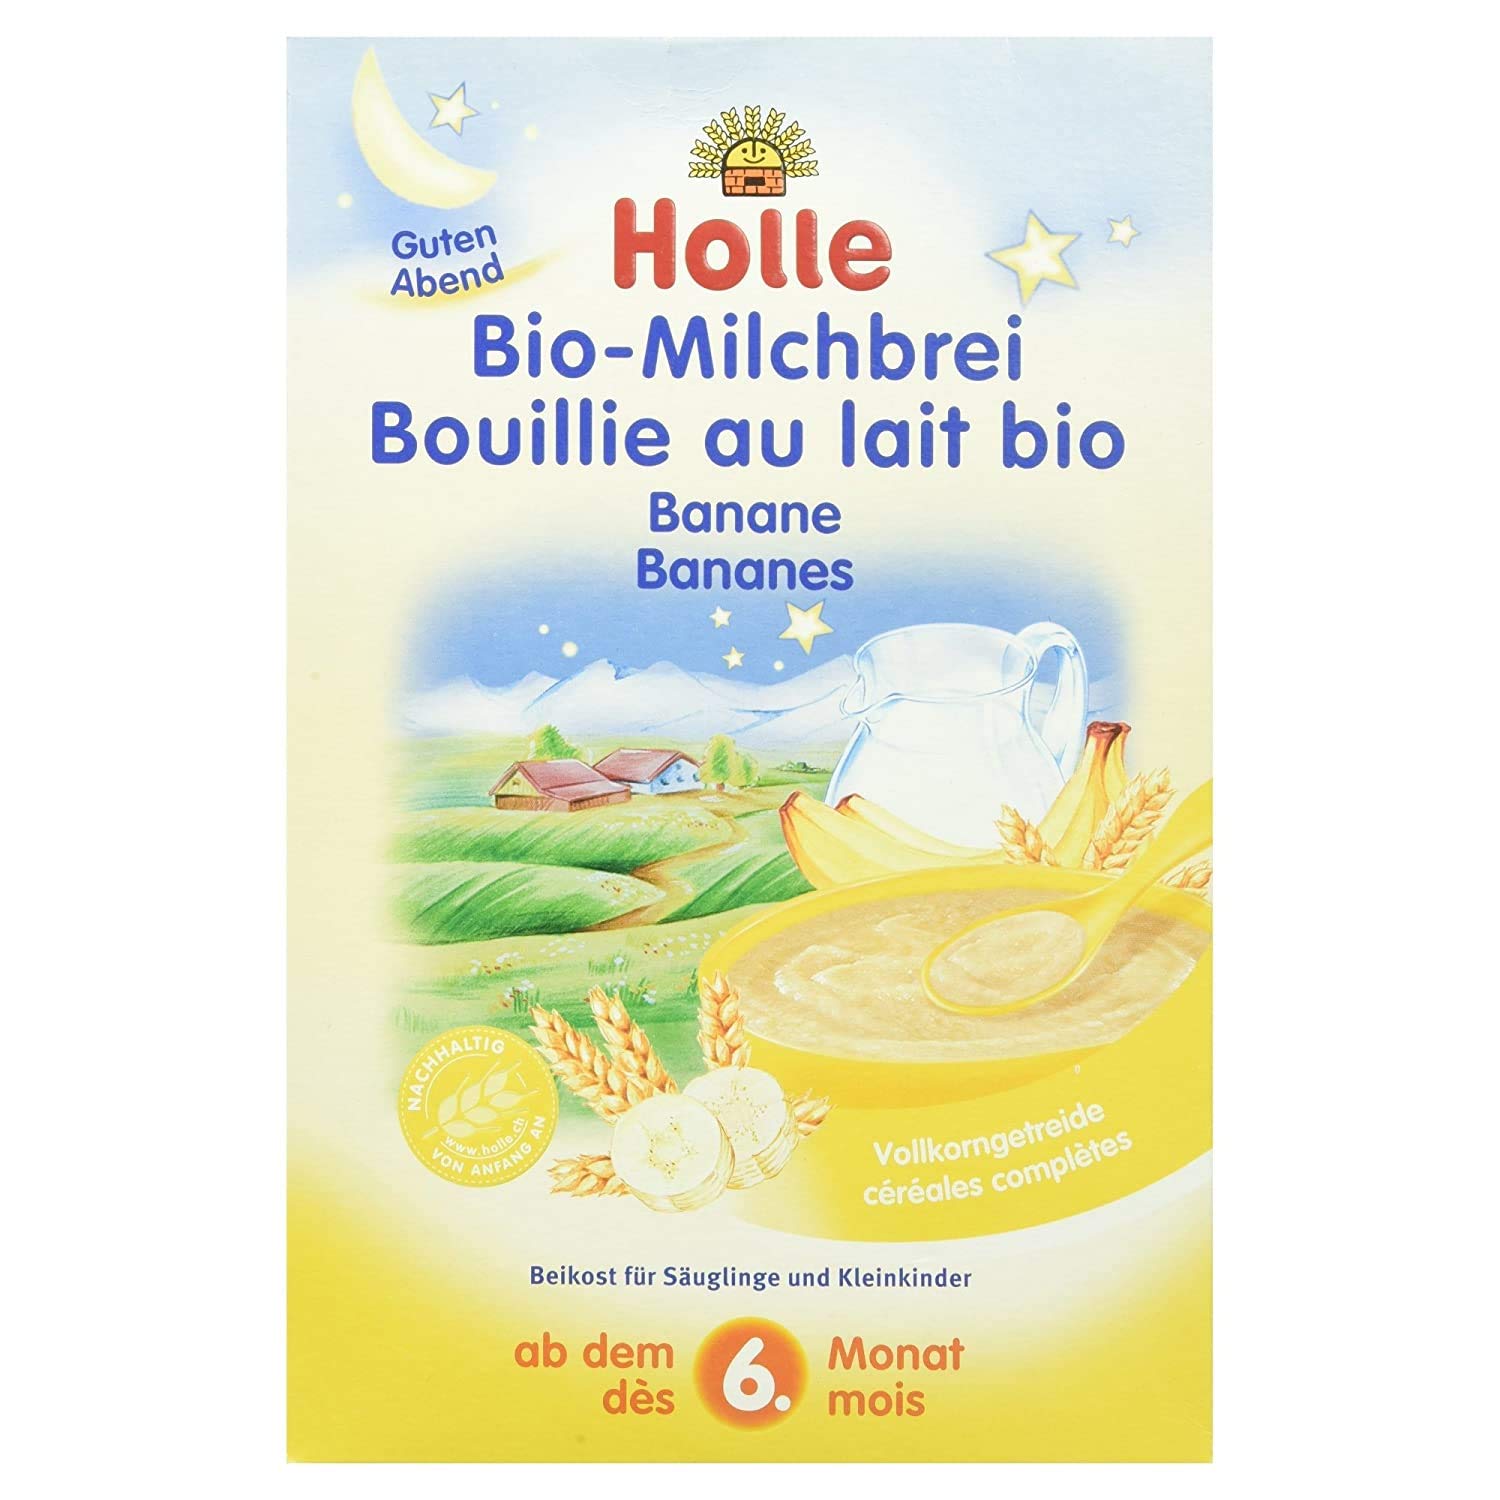 Holle Bio-Milchbrei Banane, 3er Pack (3 x 250 g)